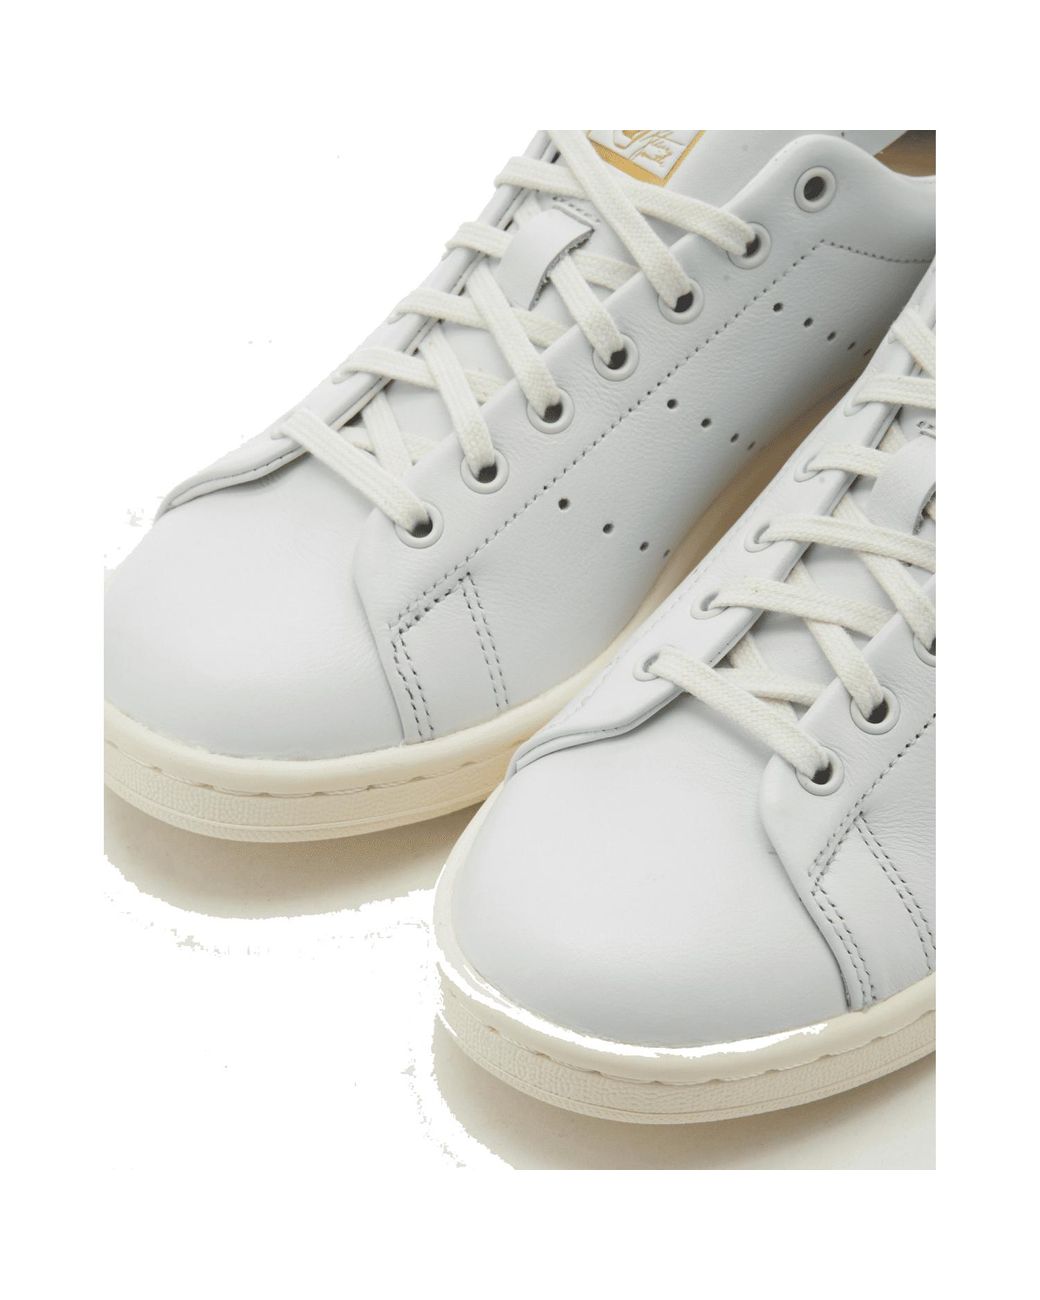 Adidas Stan Smith Lux (White/Panton) 9.5